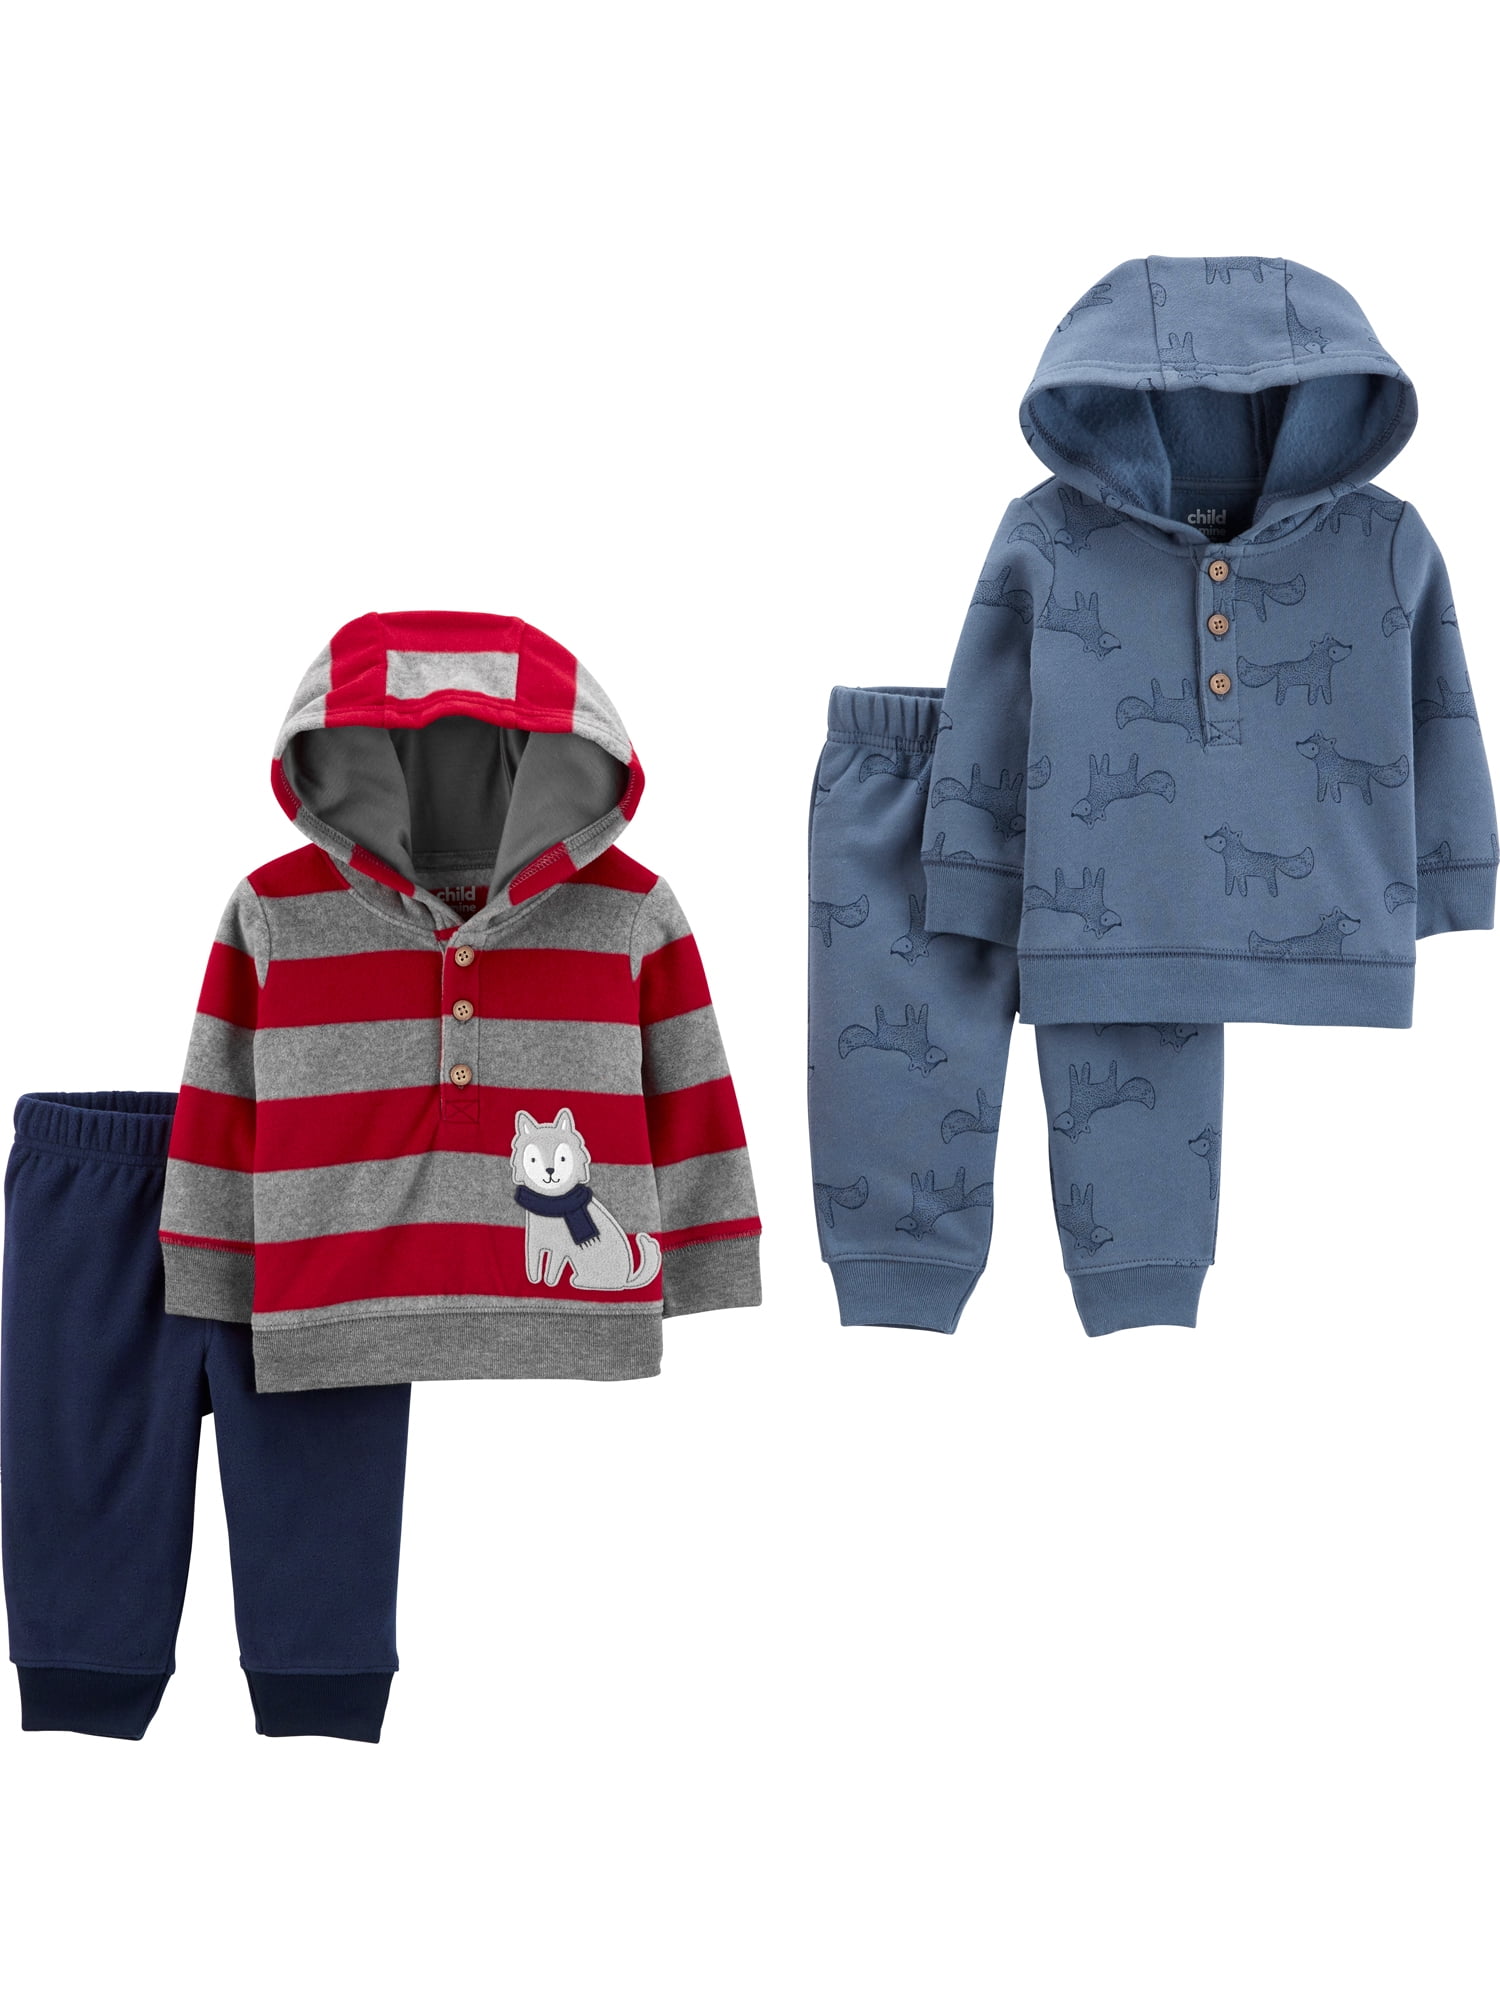 Details about   Wondernation 3 piece jacket set 3-6 months baby Boy 